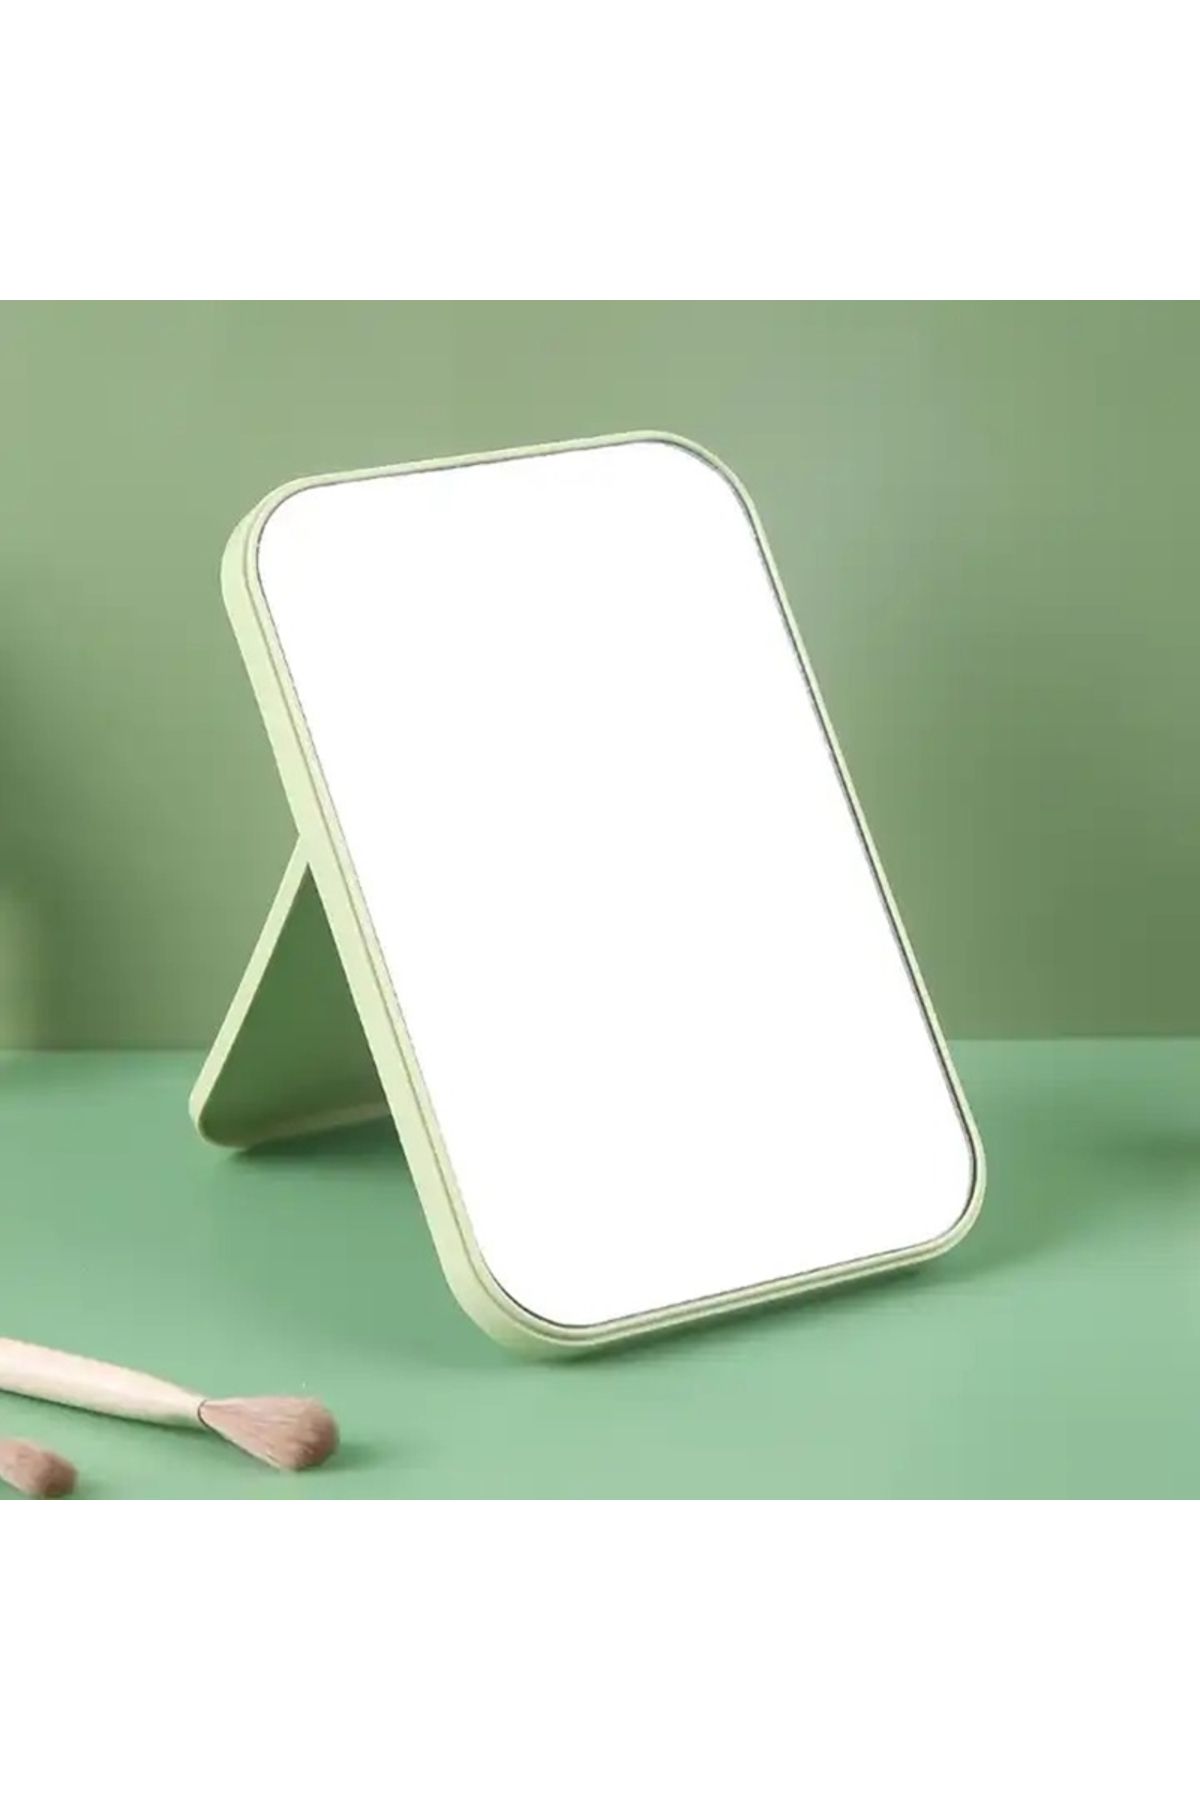 gaman Yeşil Makyaj Aynası Çanta Boy Masa El Aynası Masa Aynası Makyaj Aynası Asılabilir 14,8 Cm X 10 Cm